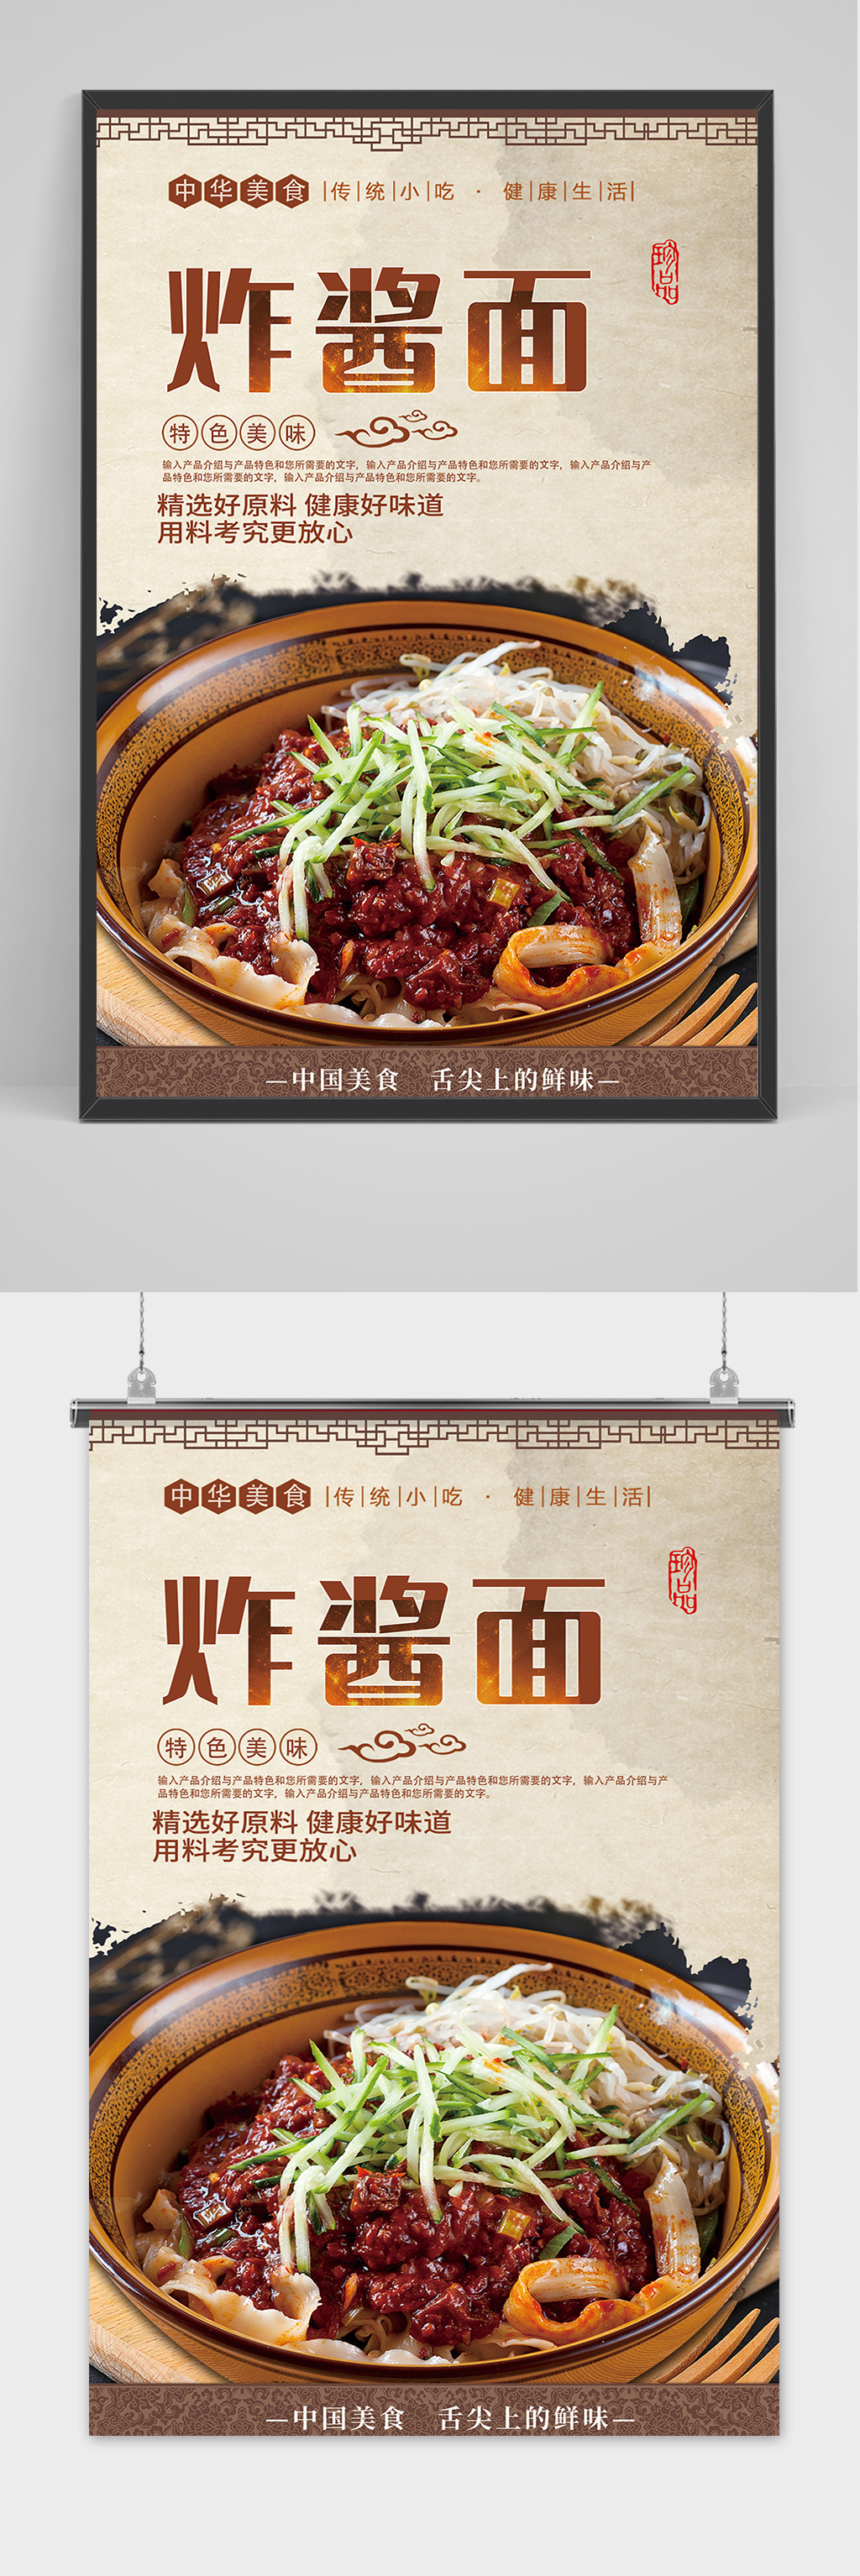 创意中国风美食炸酱面海报